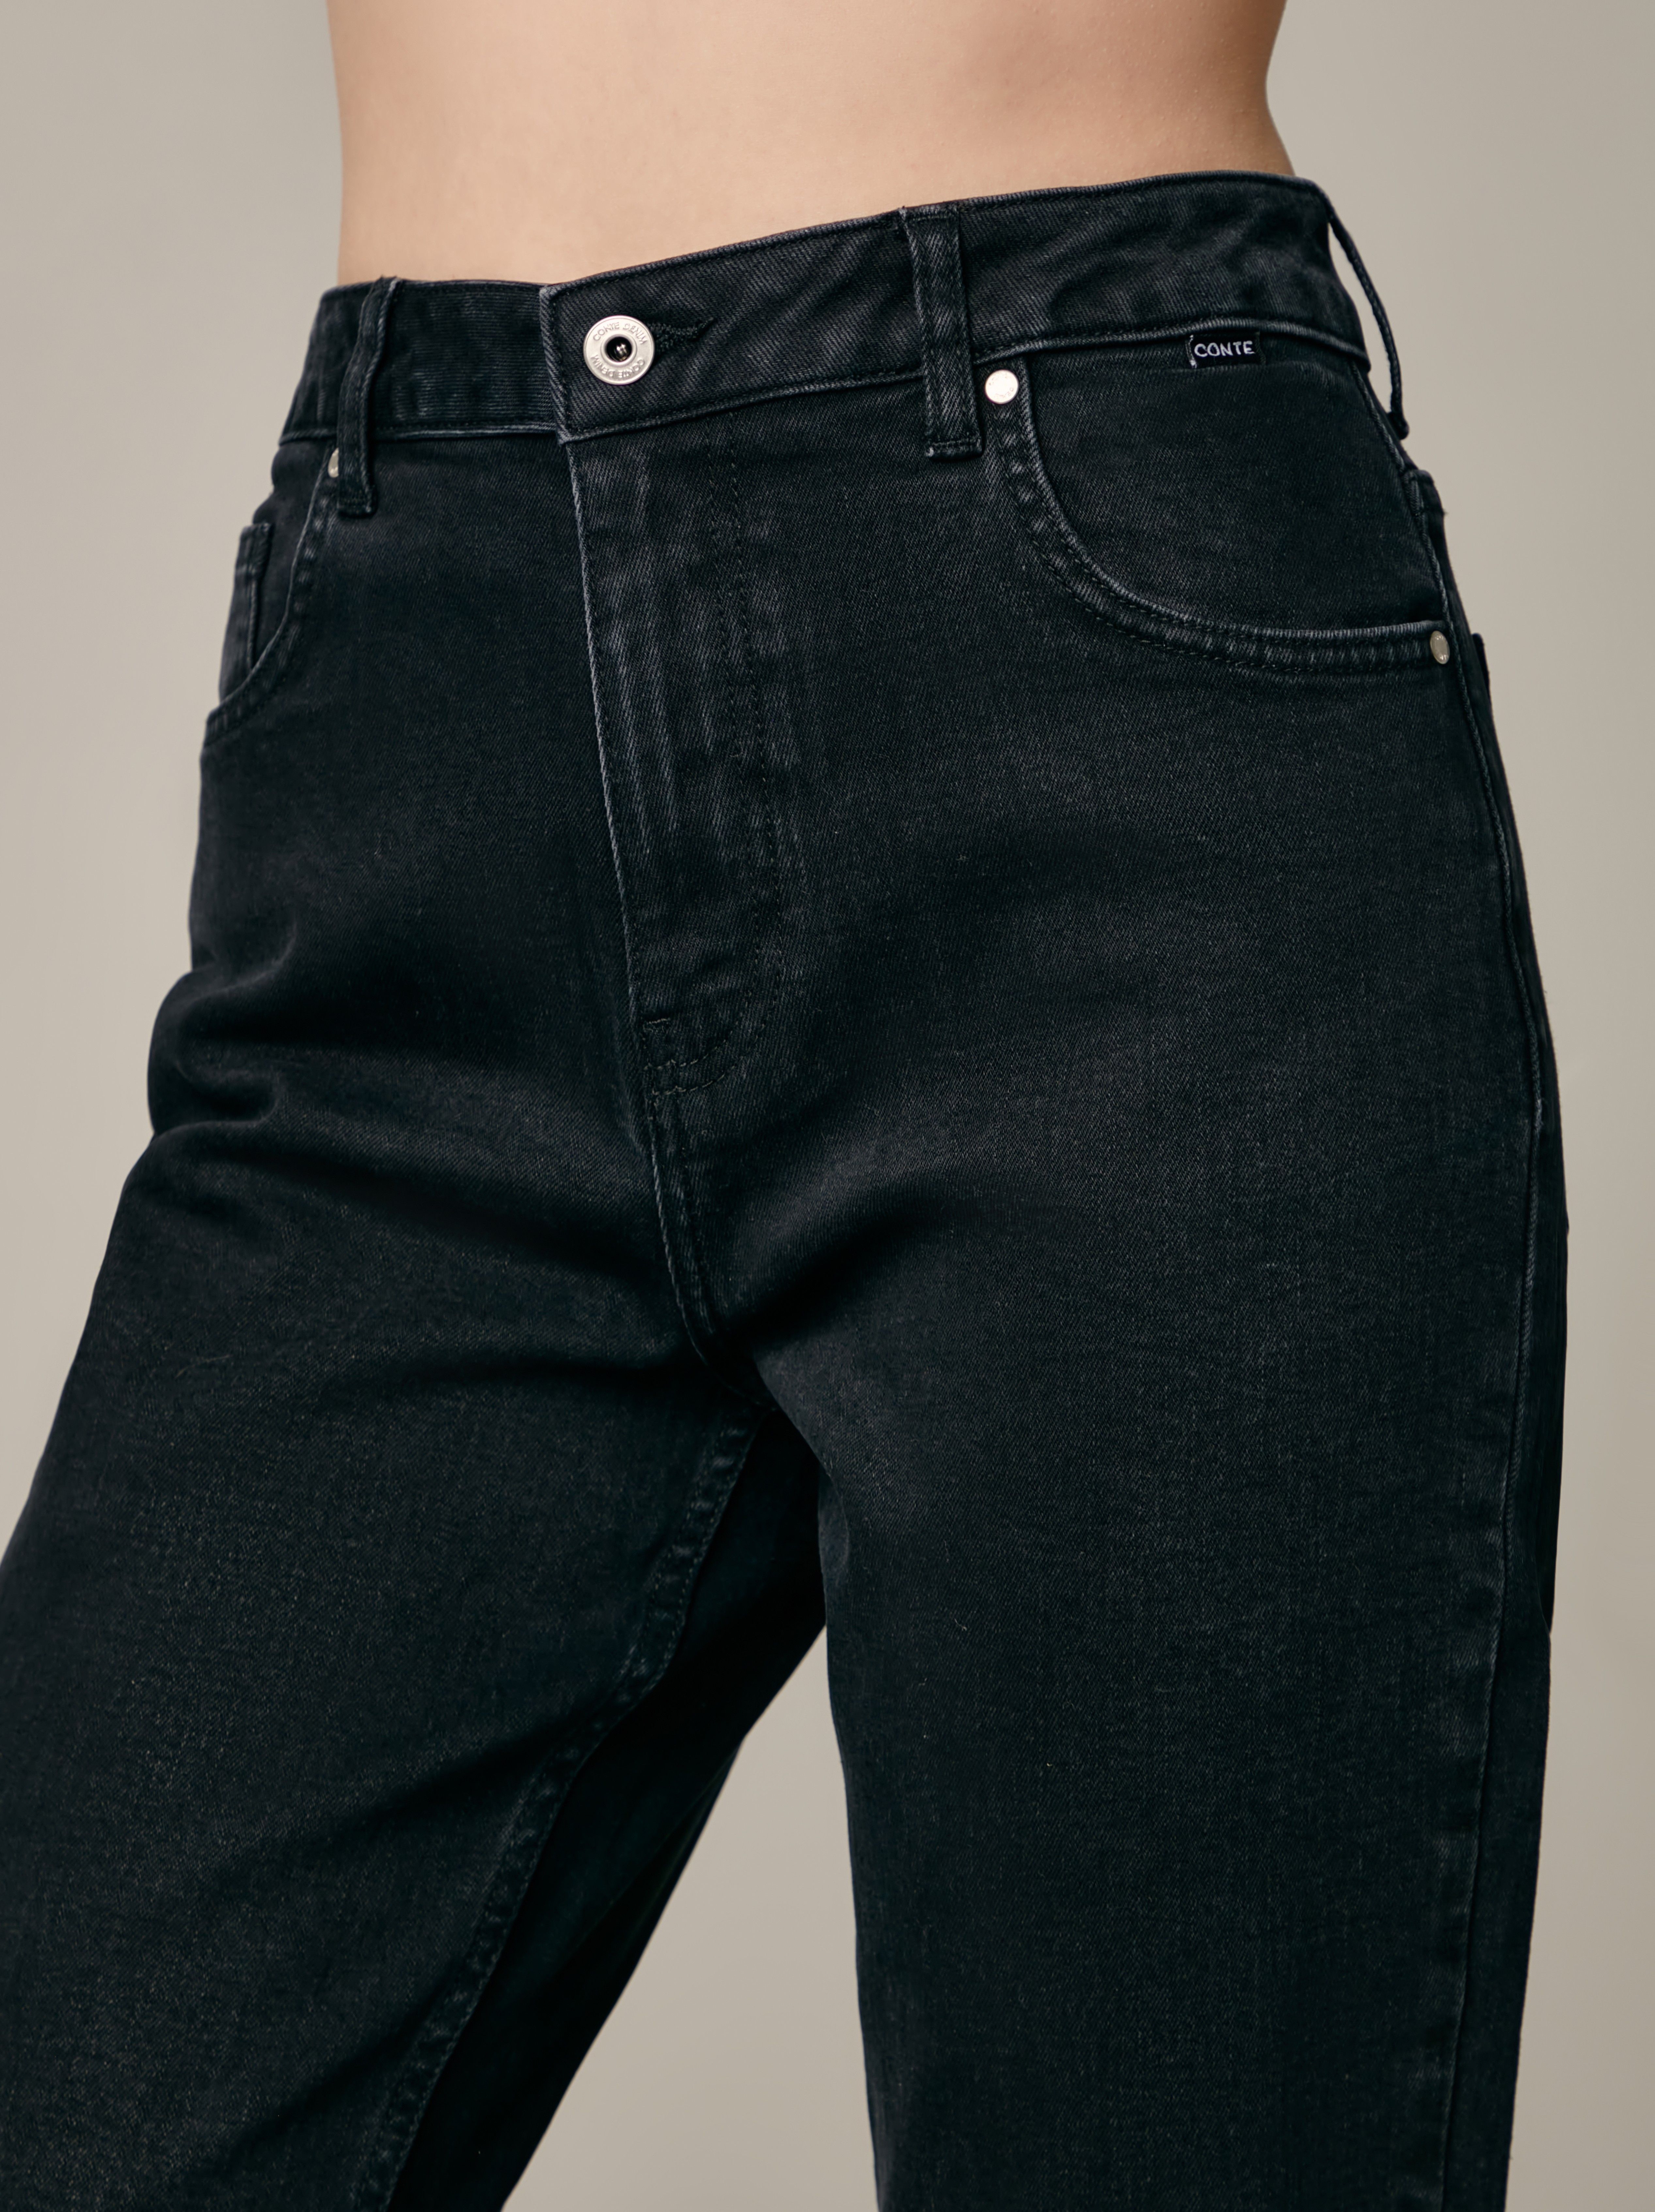 Классические черные джинсы mom с высокой посадкой CON-608 Conte черного цвета